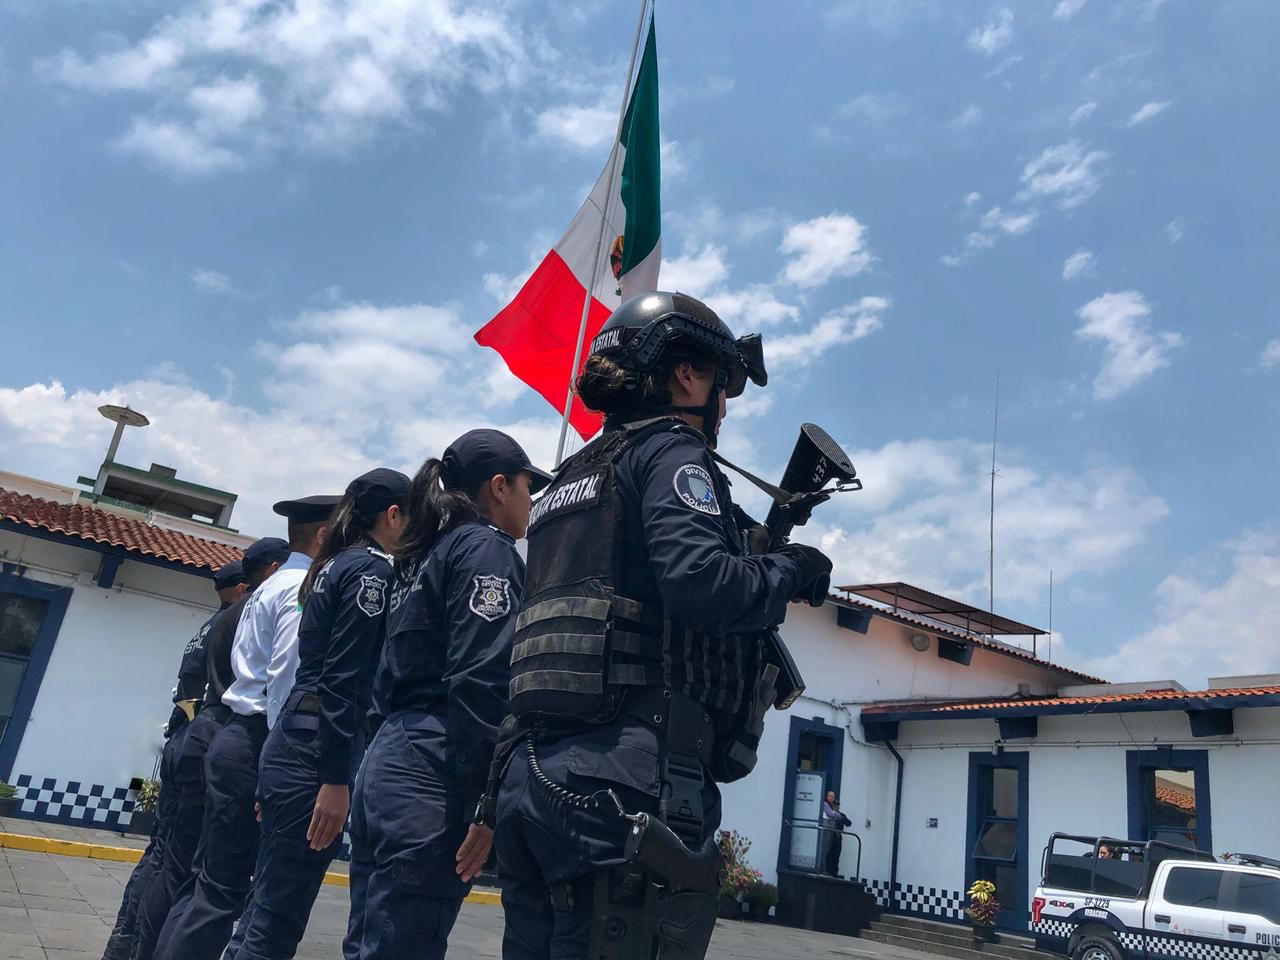 Avanza Veracruz en orden y seguridad, revela informe